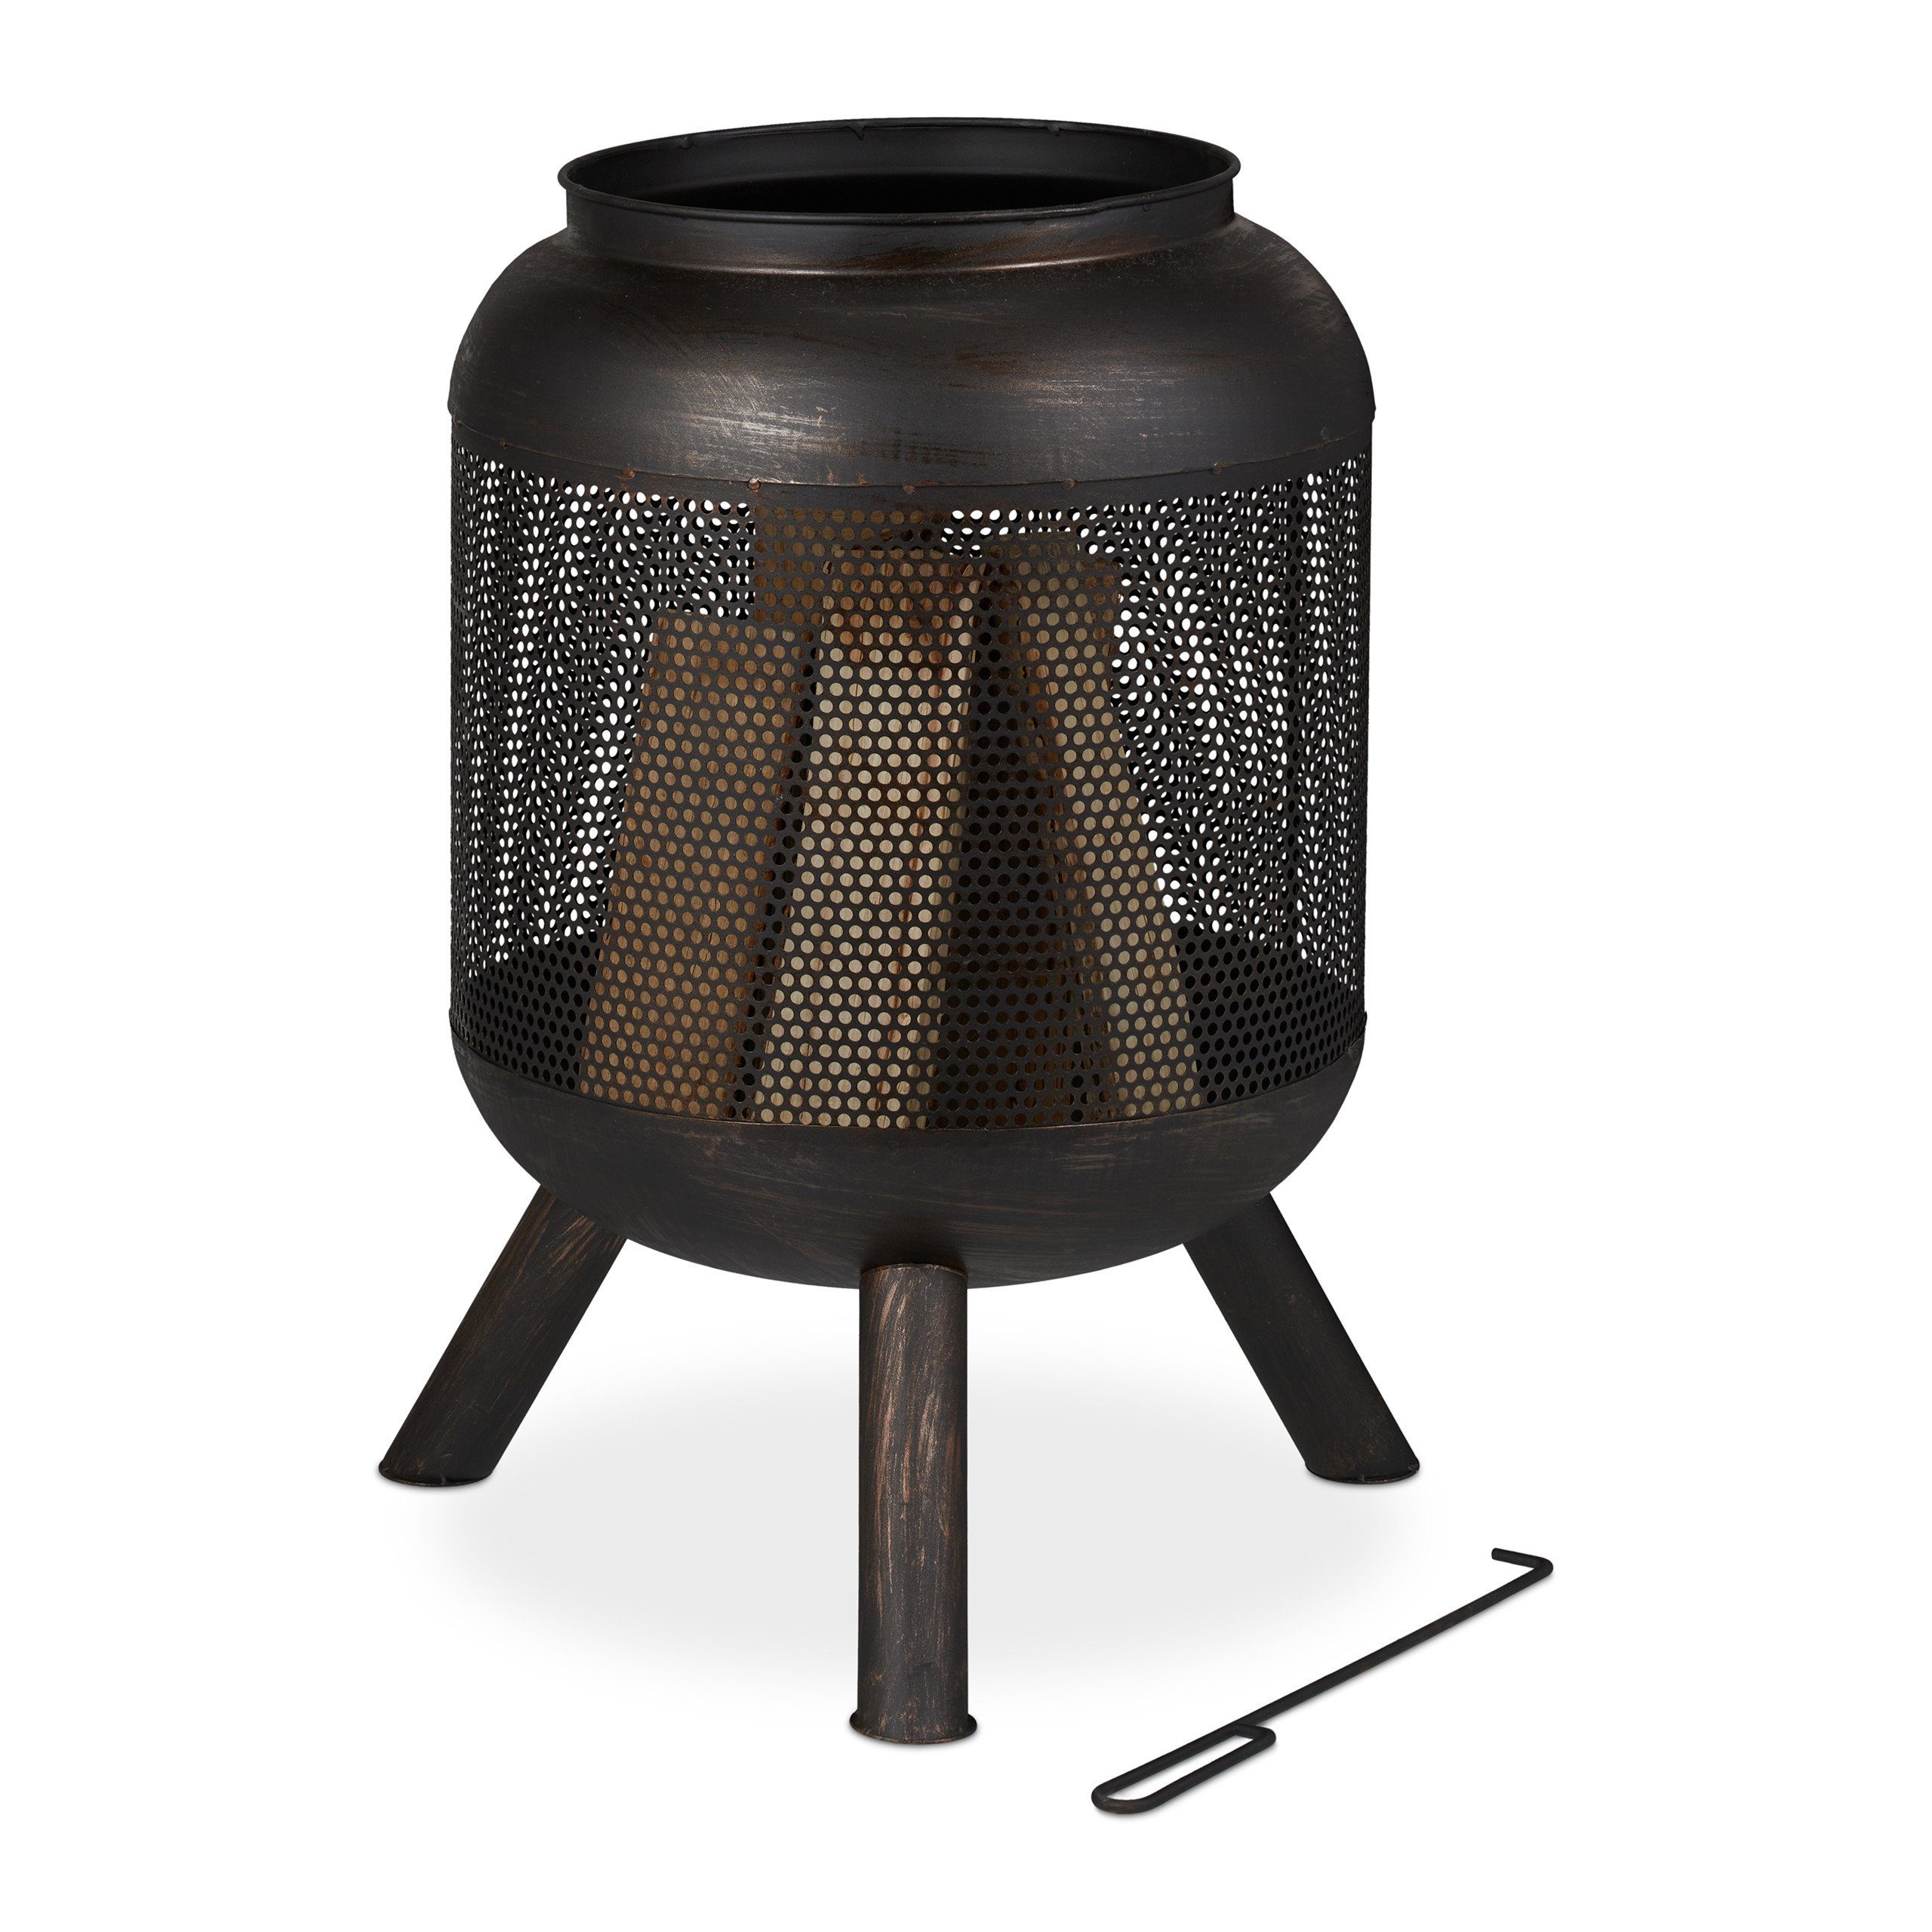 Feuerkorb Krug mit Feuerkorb relaxdays schwarz-bronze Mesh